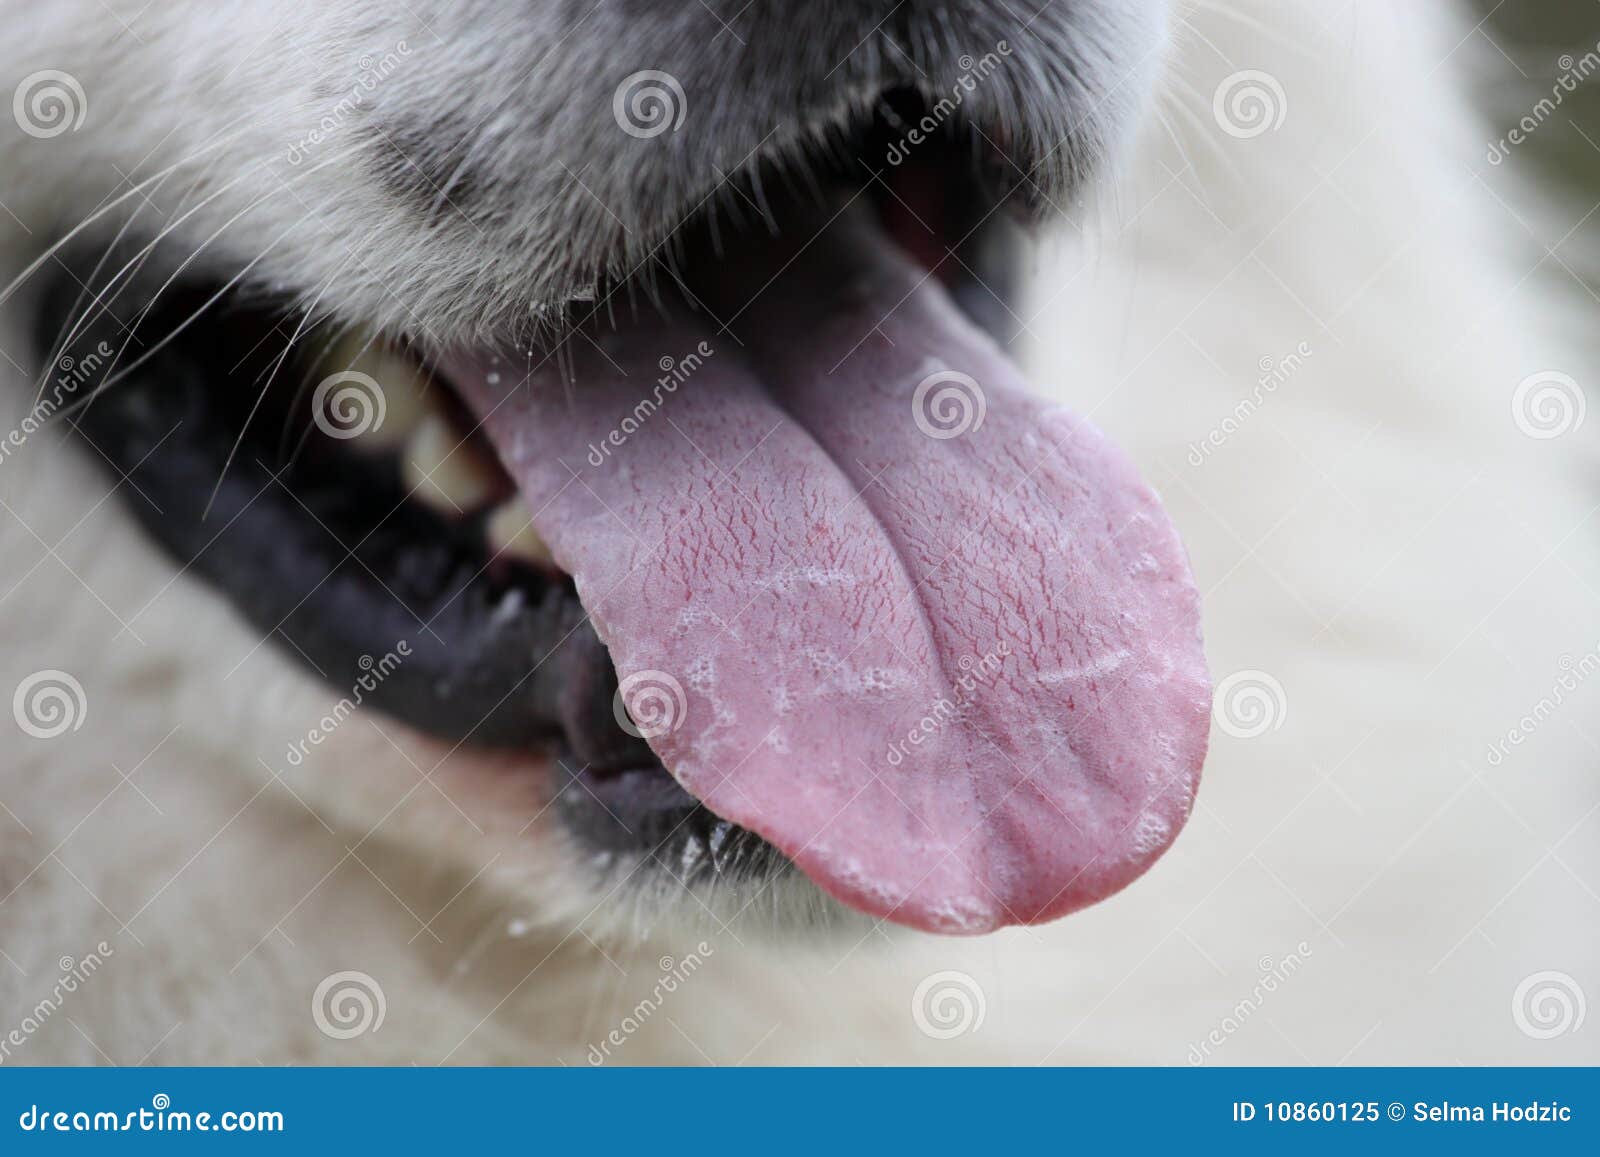 Синюшность языка у собаки